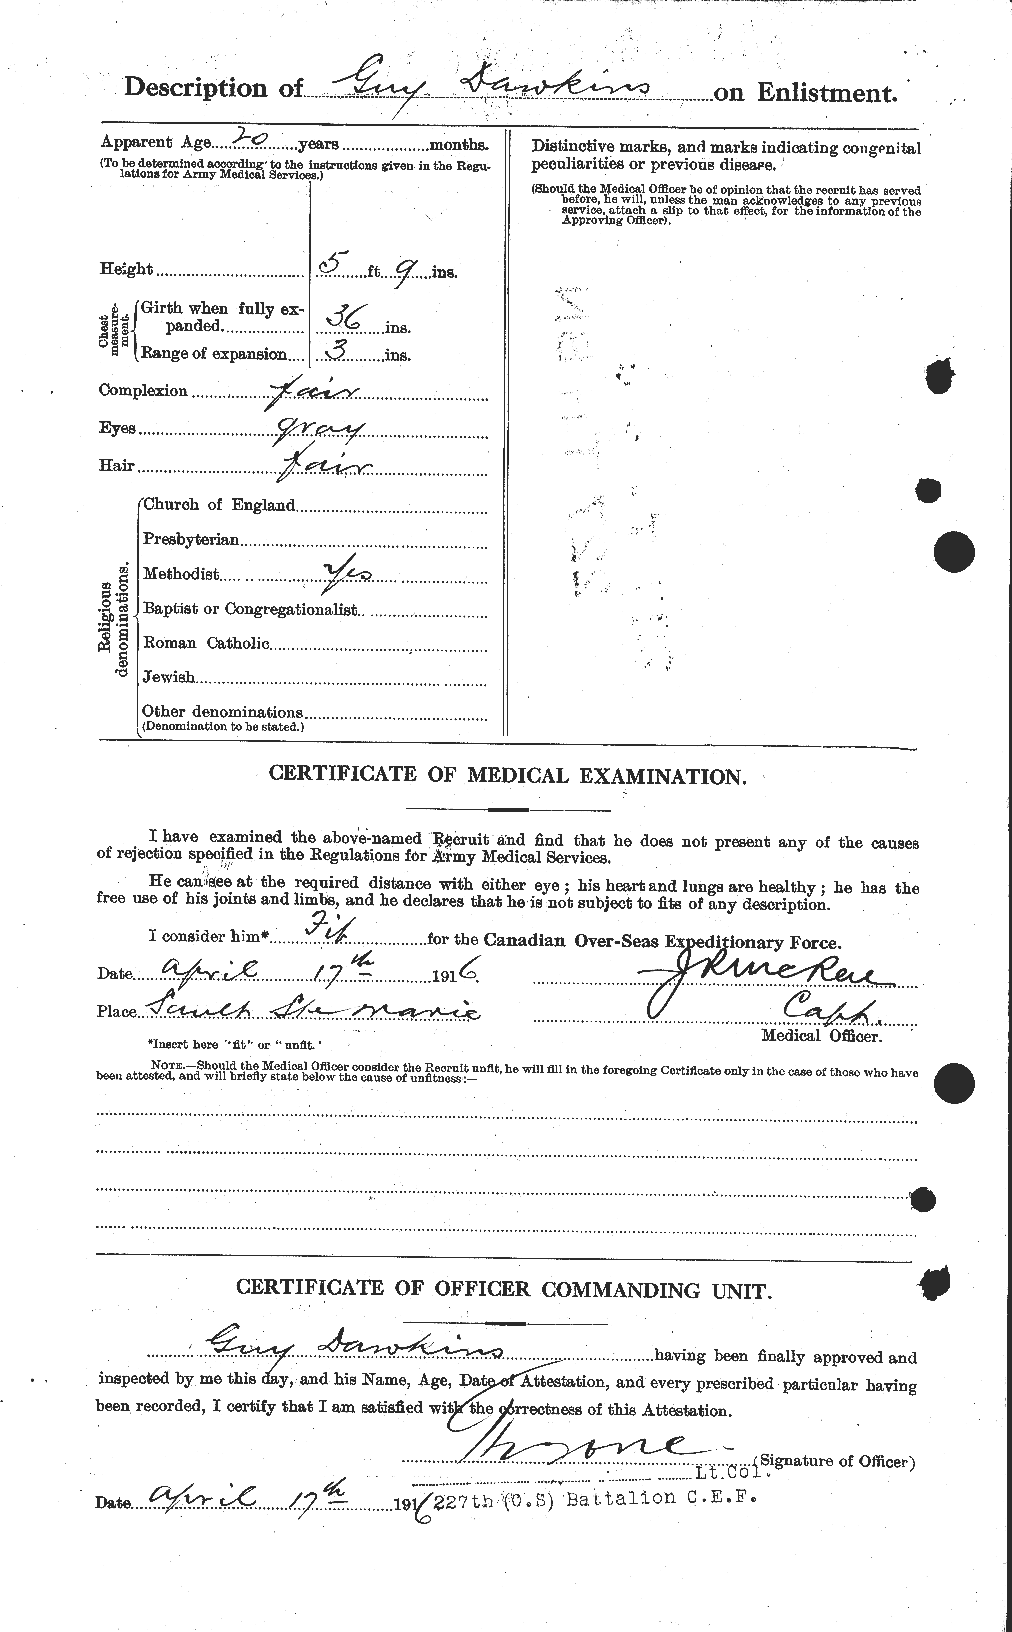 Dossiers du Personnel de la Première Guerre mondiale - CEC 283127b